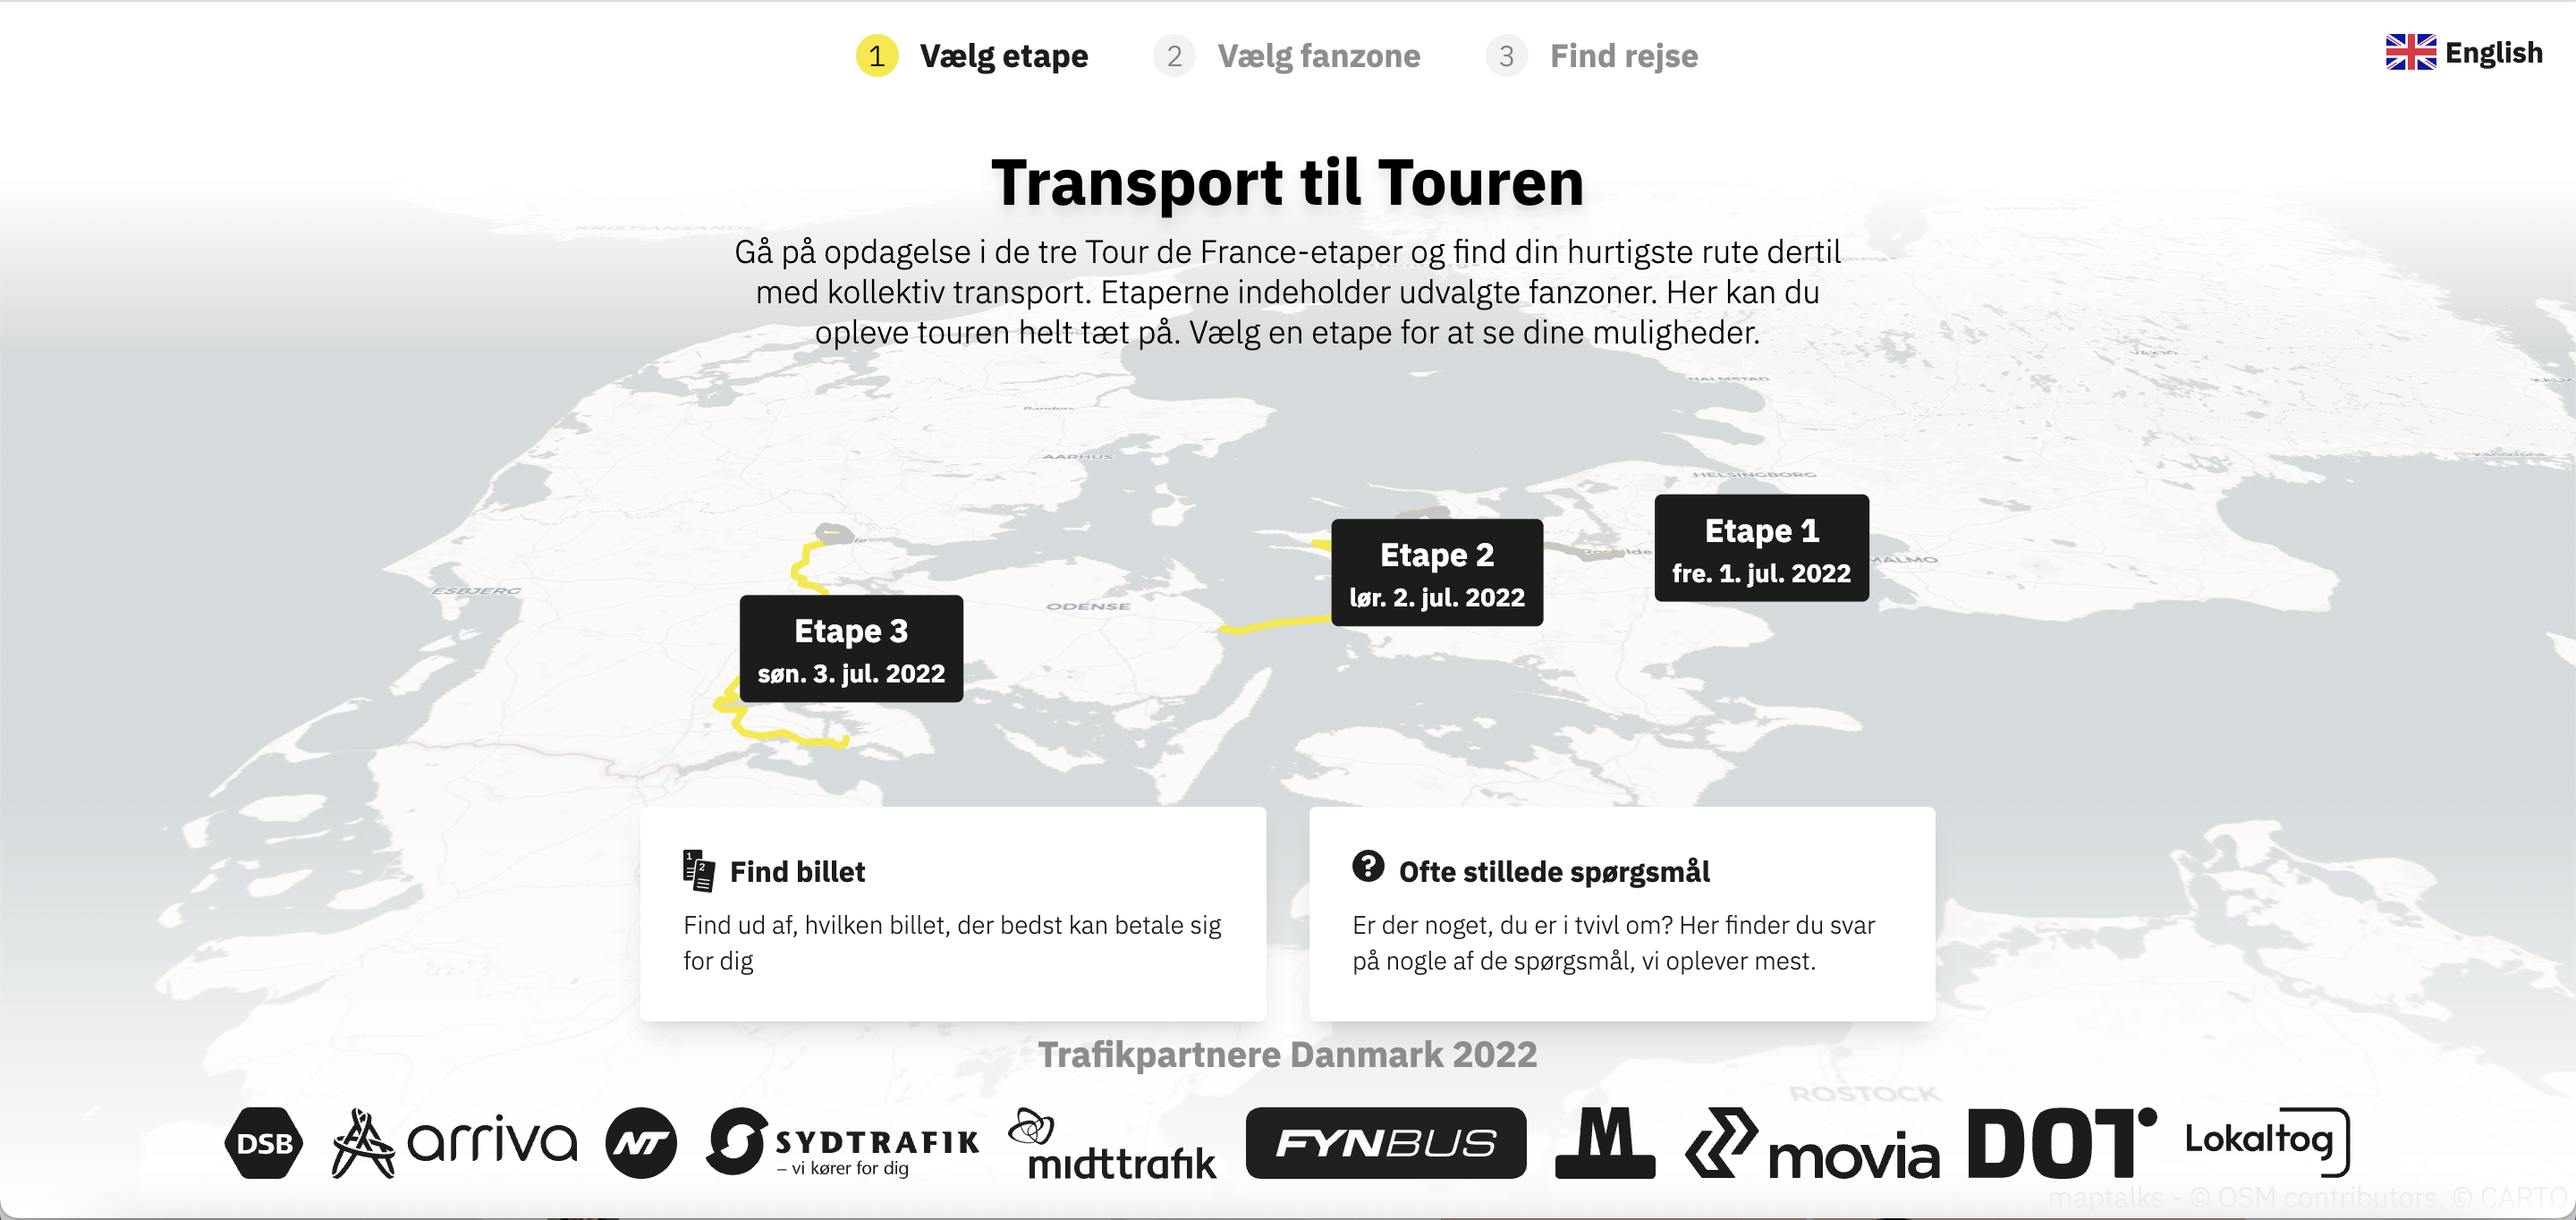 Nyt website: Sådan kommer du til Tour de France i Danmark med offentlig transport DOT - Din Offentlige Transport